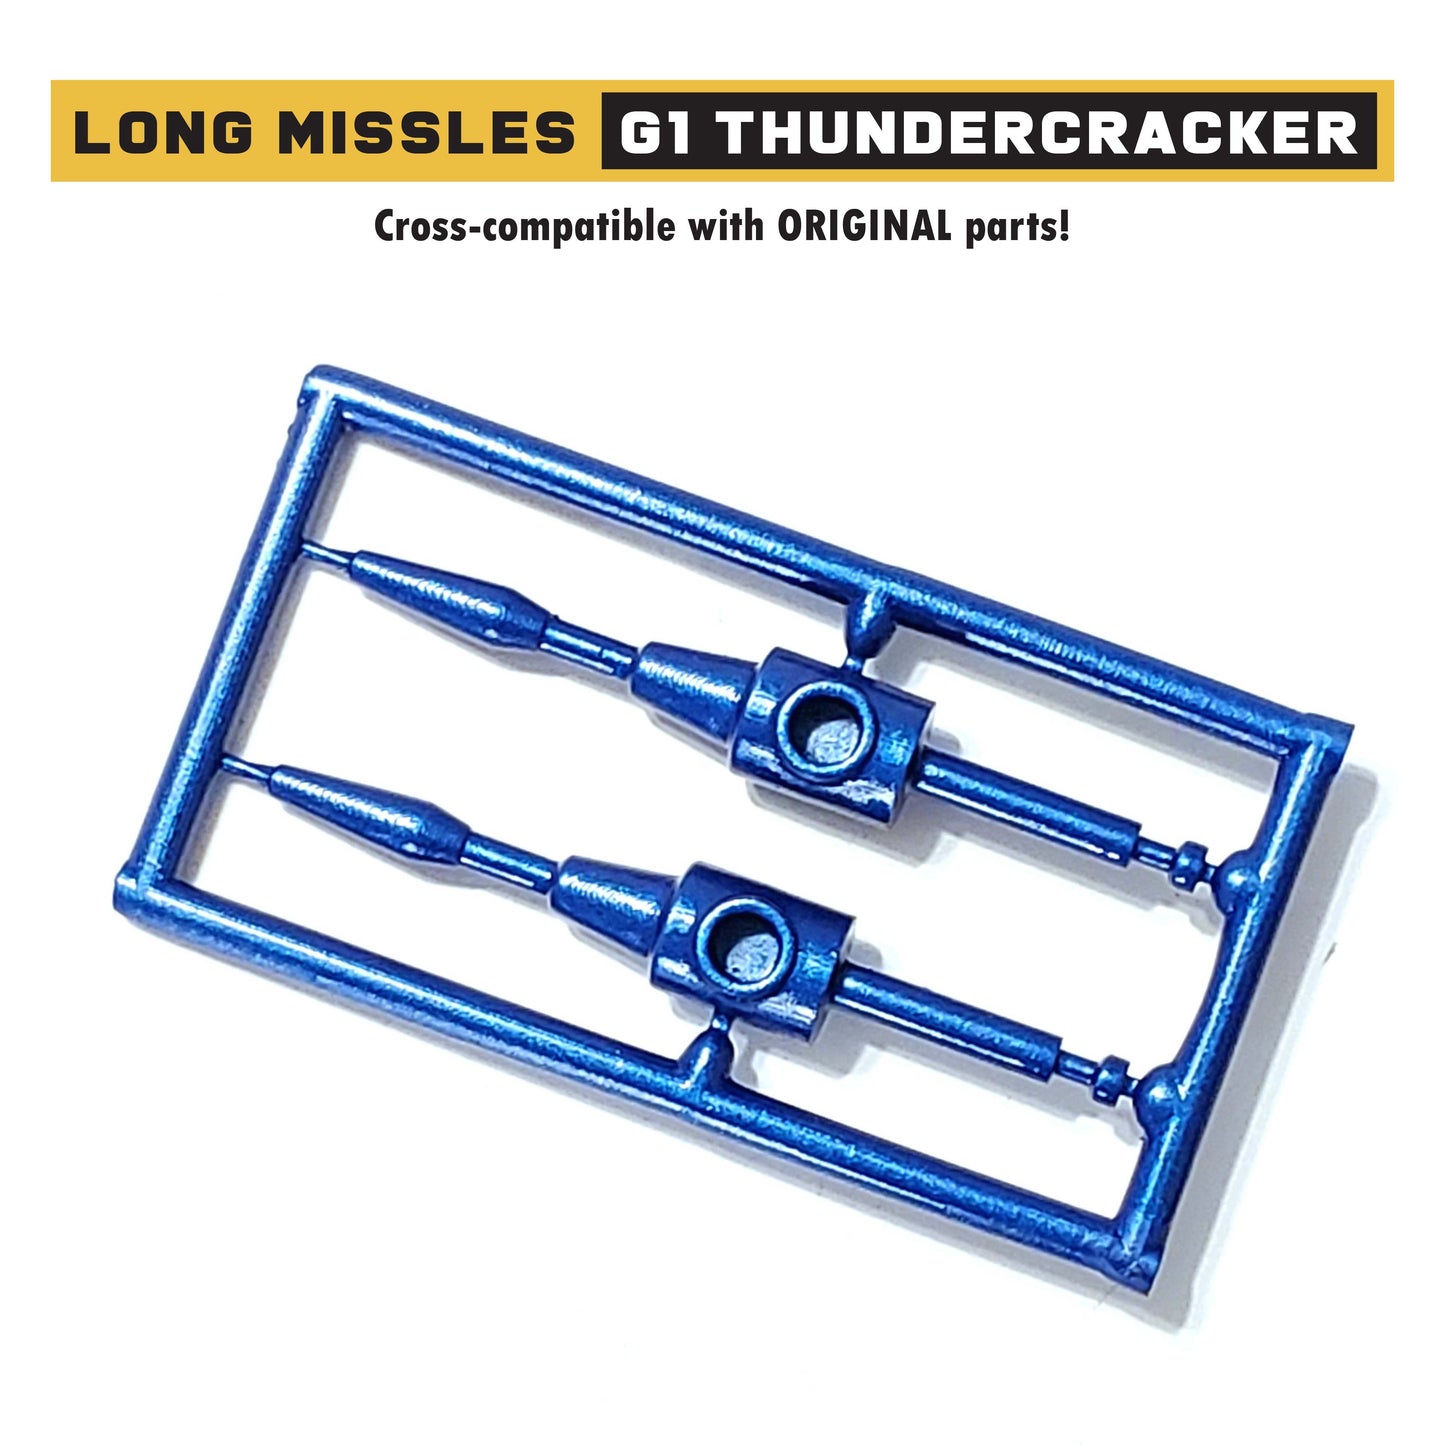 Long Missile Parts for G1 Thundercracker